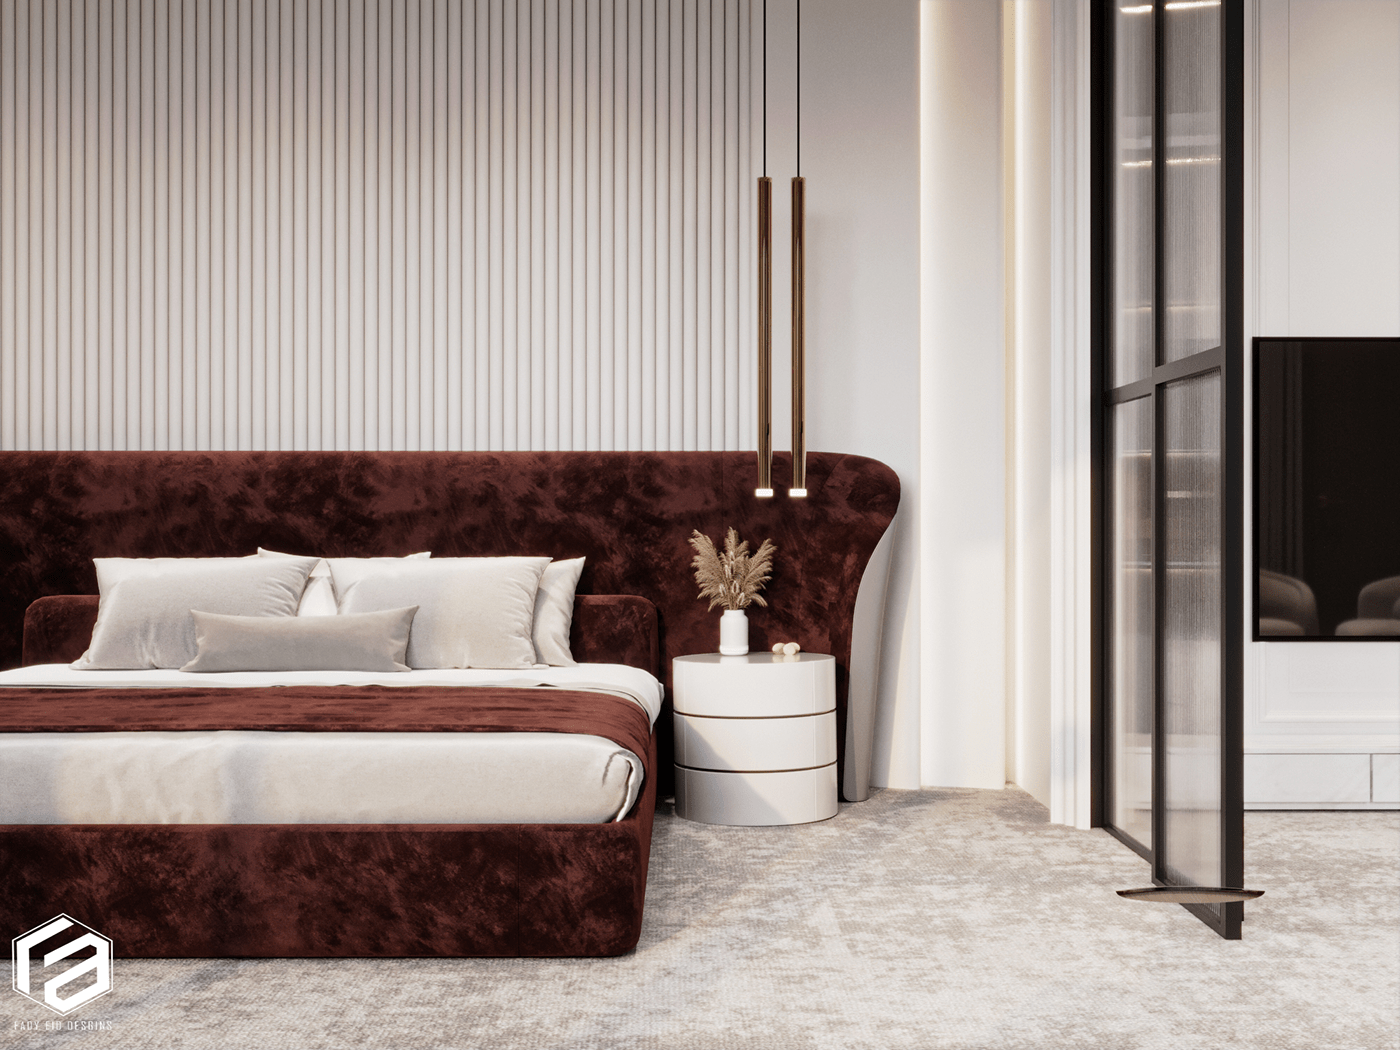 Interior bedroom design corona 3ds max Render